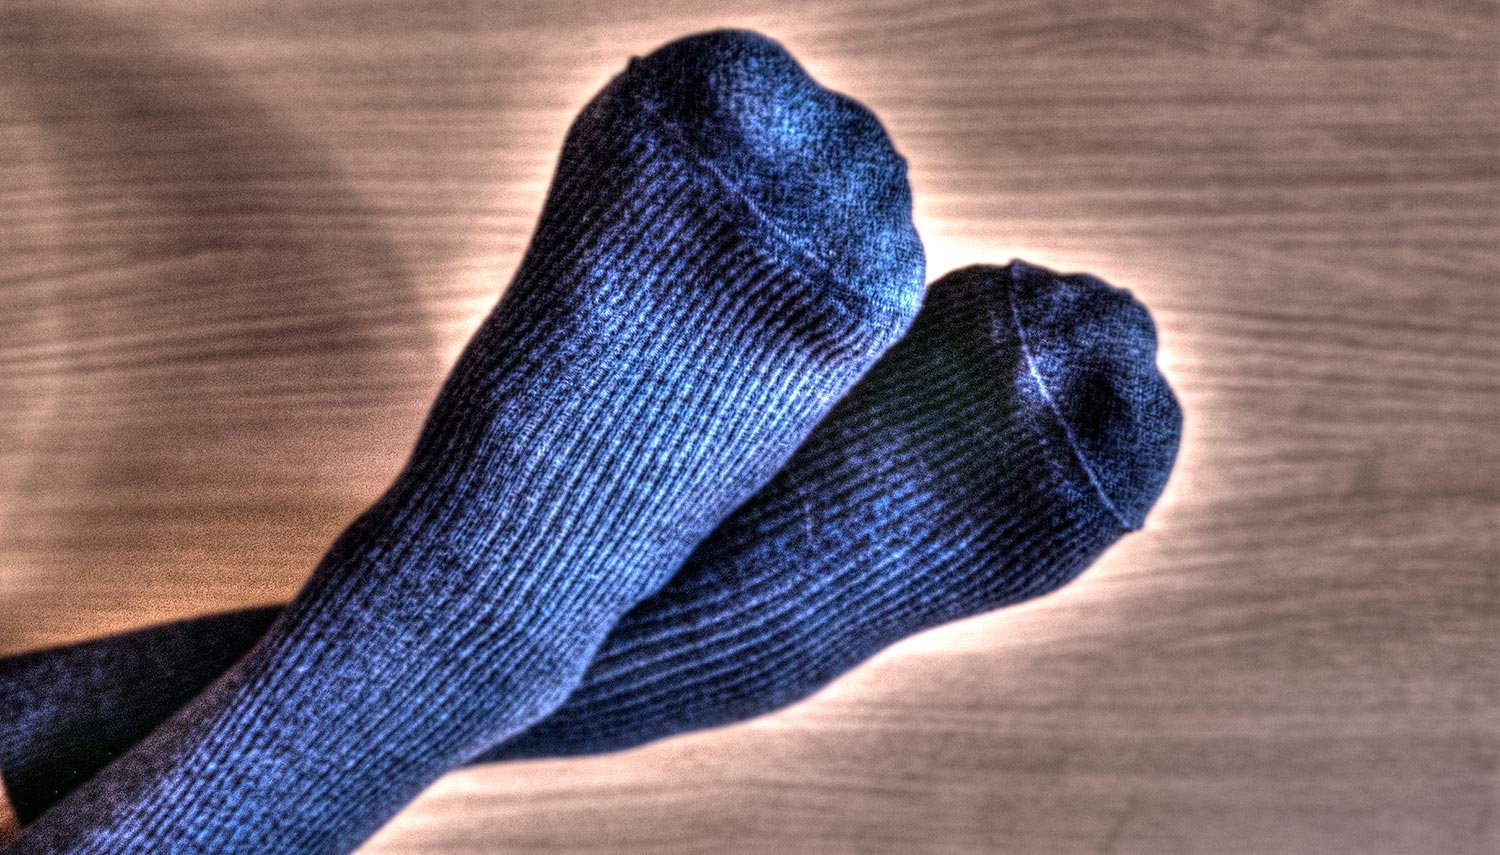 Дежурные мужские носки в рубчик Omsa 301 Comfort ©bracatuS